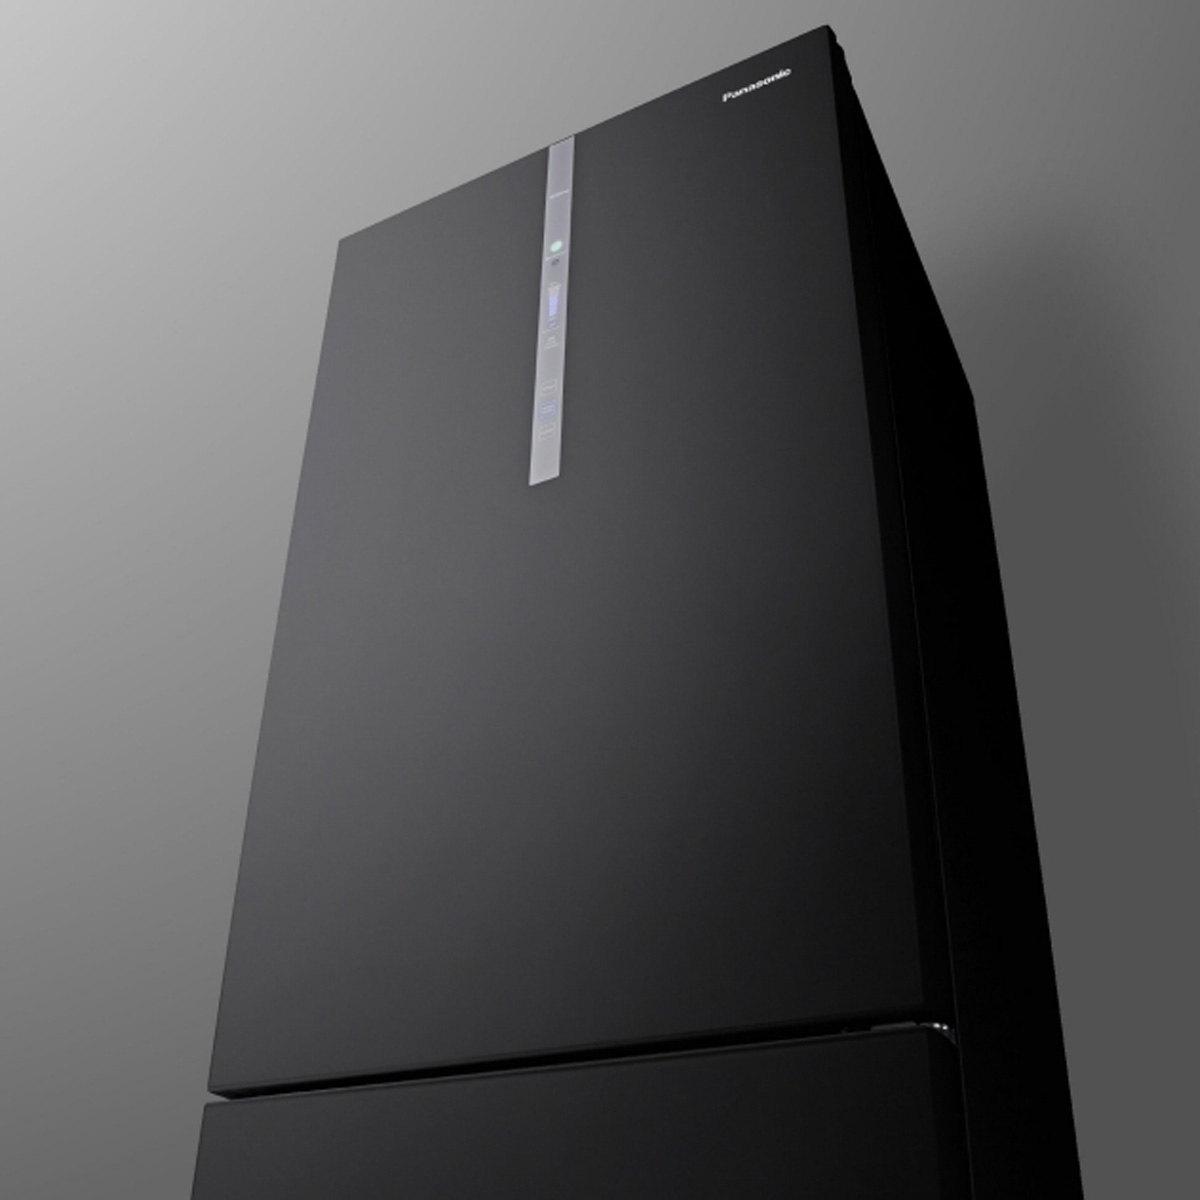 Tủ Lạnh Panasonic NR-BX421WGKV được trang bị bảng điều khiển tiện lợi